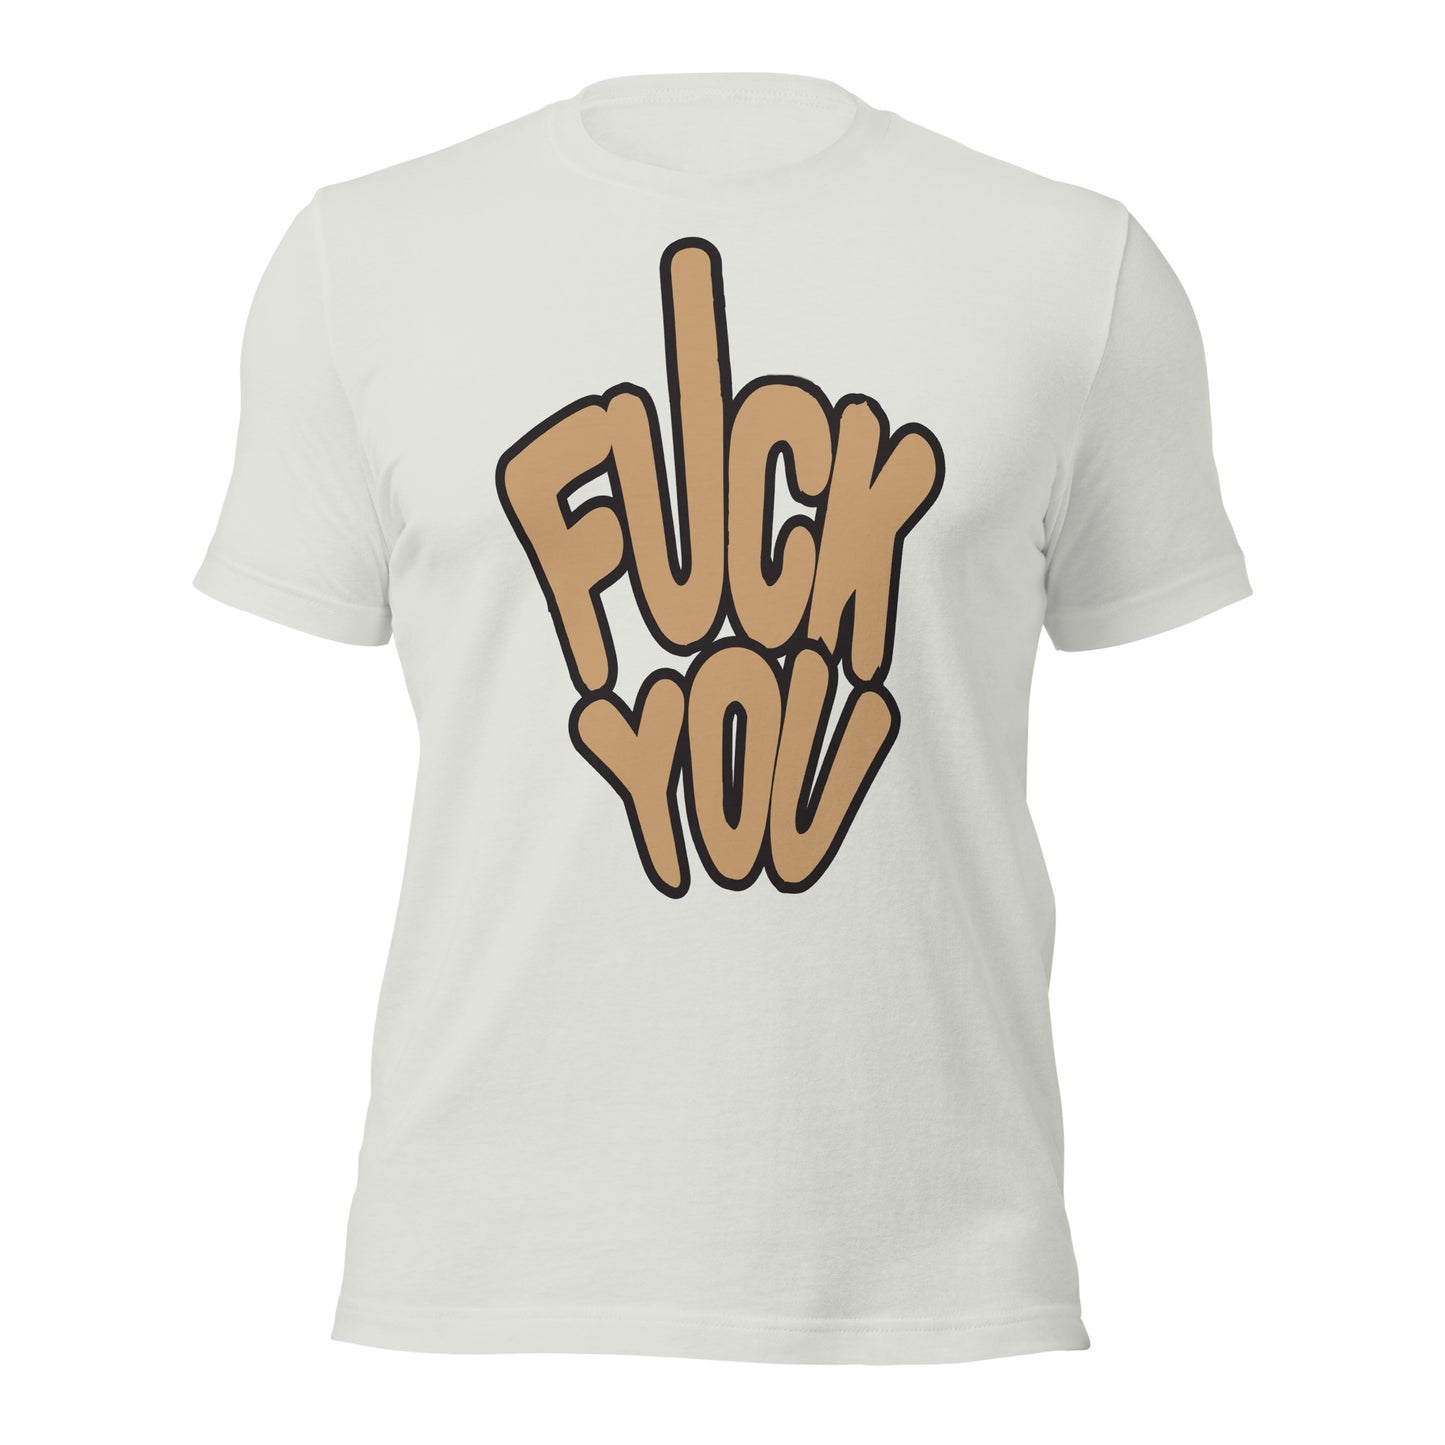 Fuck You - Unisex t-shirt